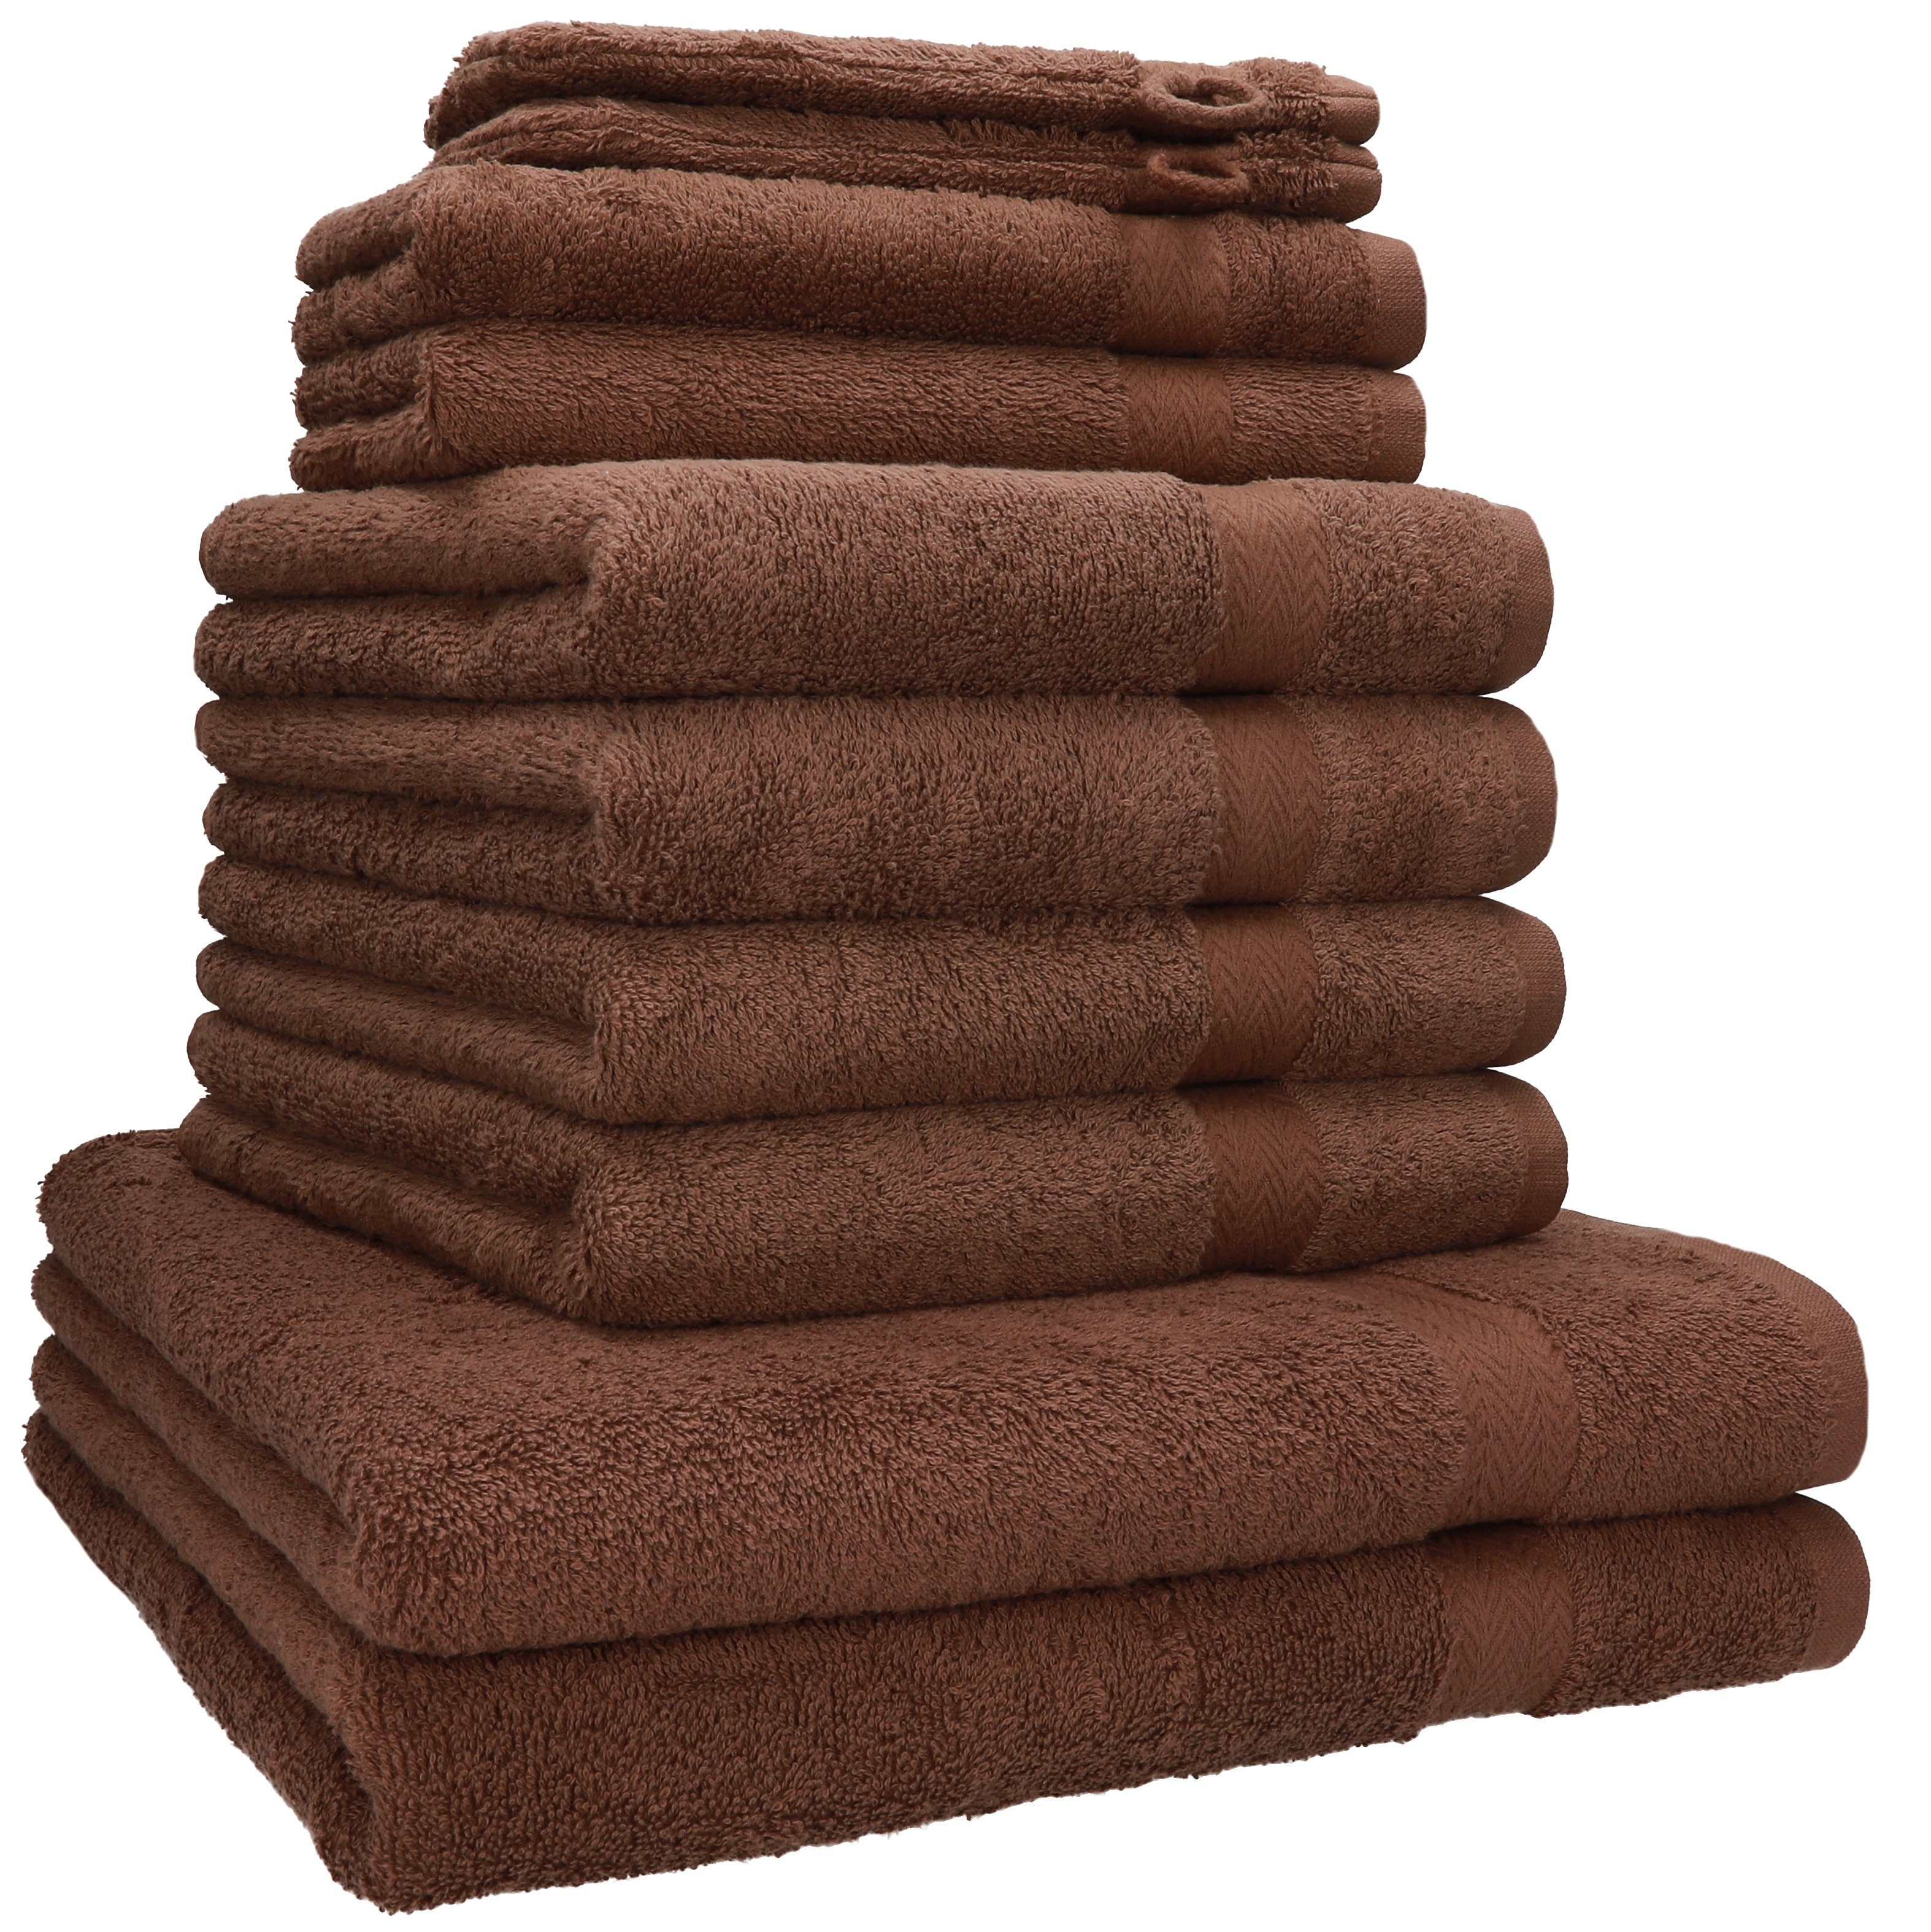 Betz Handtuch Set 10-tlg. Handtuch-Set PREMIUM 100% Baumwolle, 100% Baumwolle, (10-tlg) nuss | Handtuch-Sets